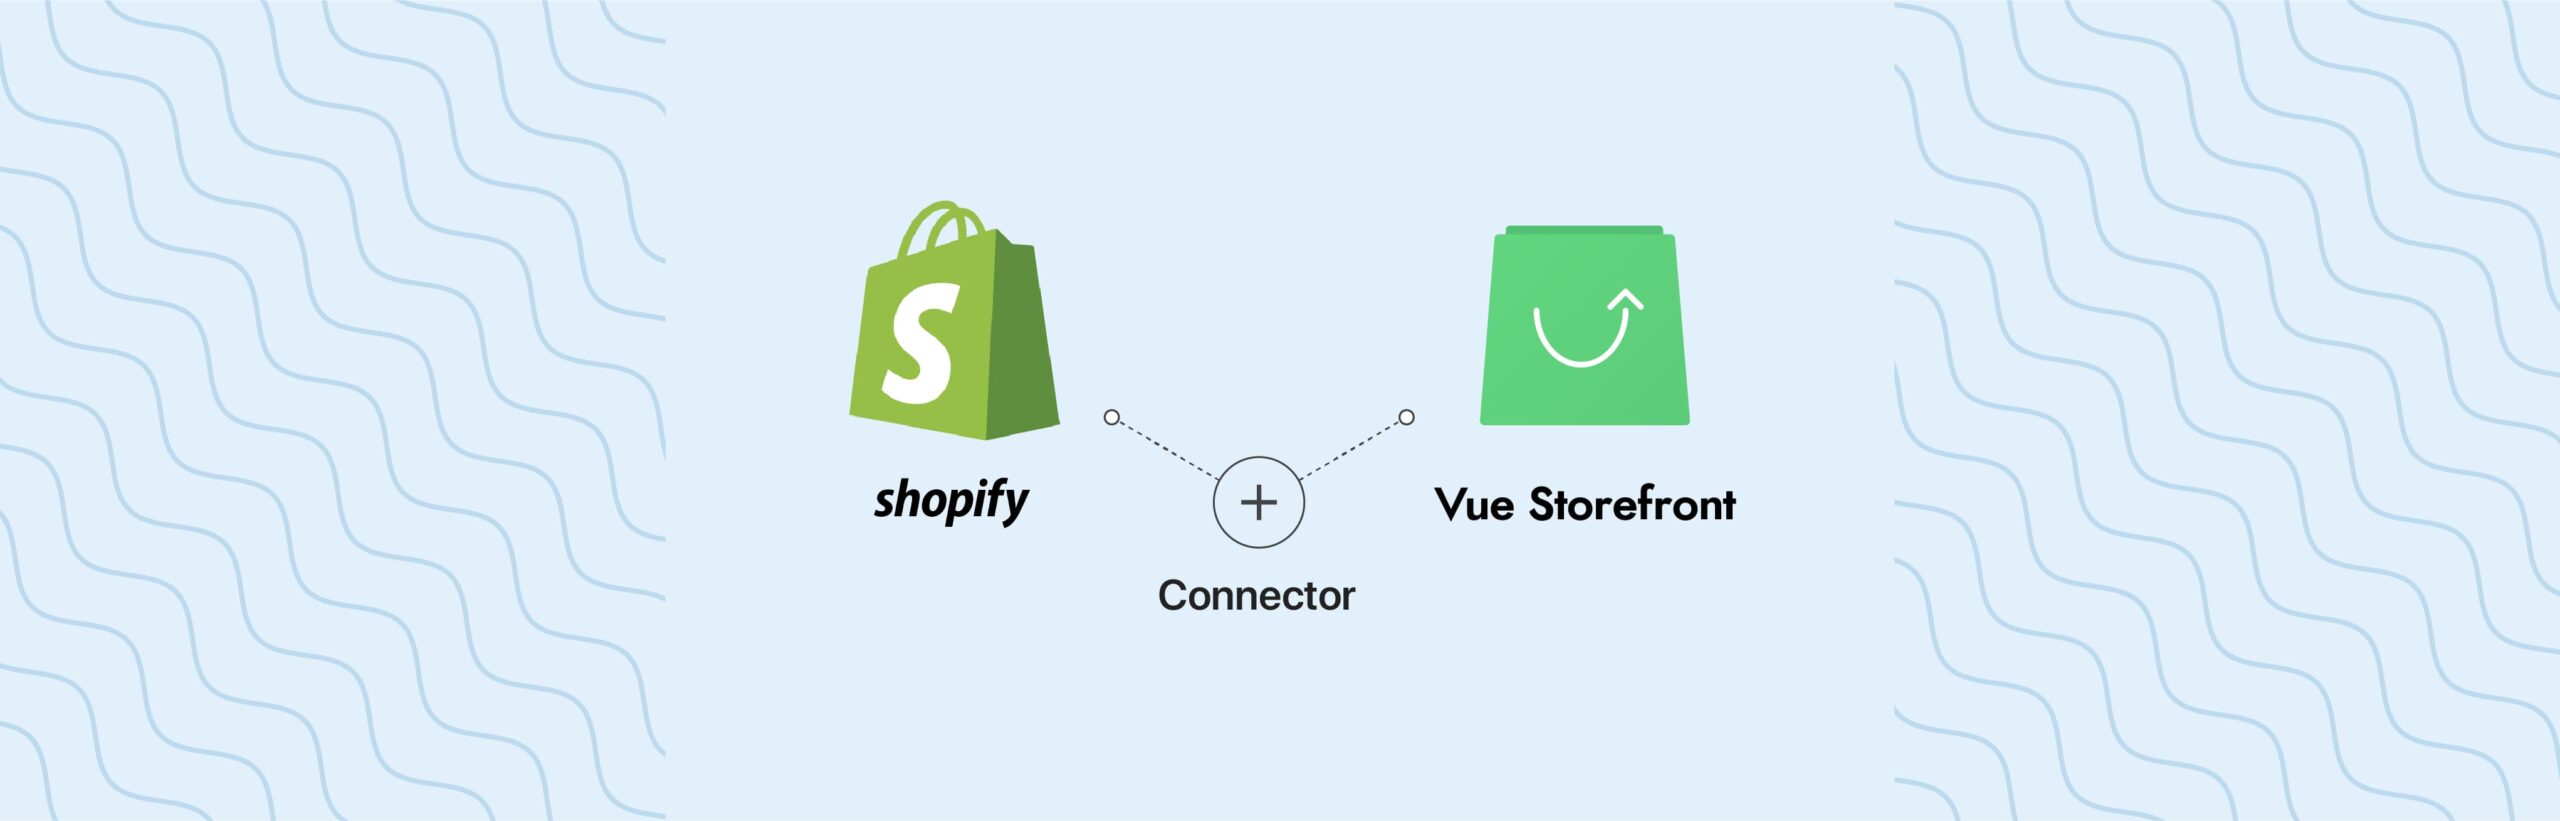 VueStorefront-Shopify-Connector-blog-banner-1